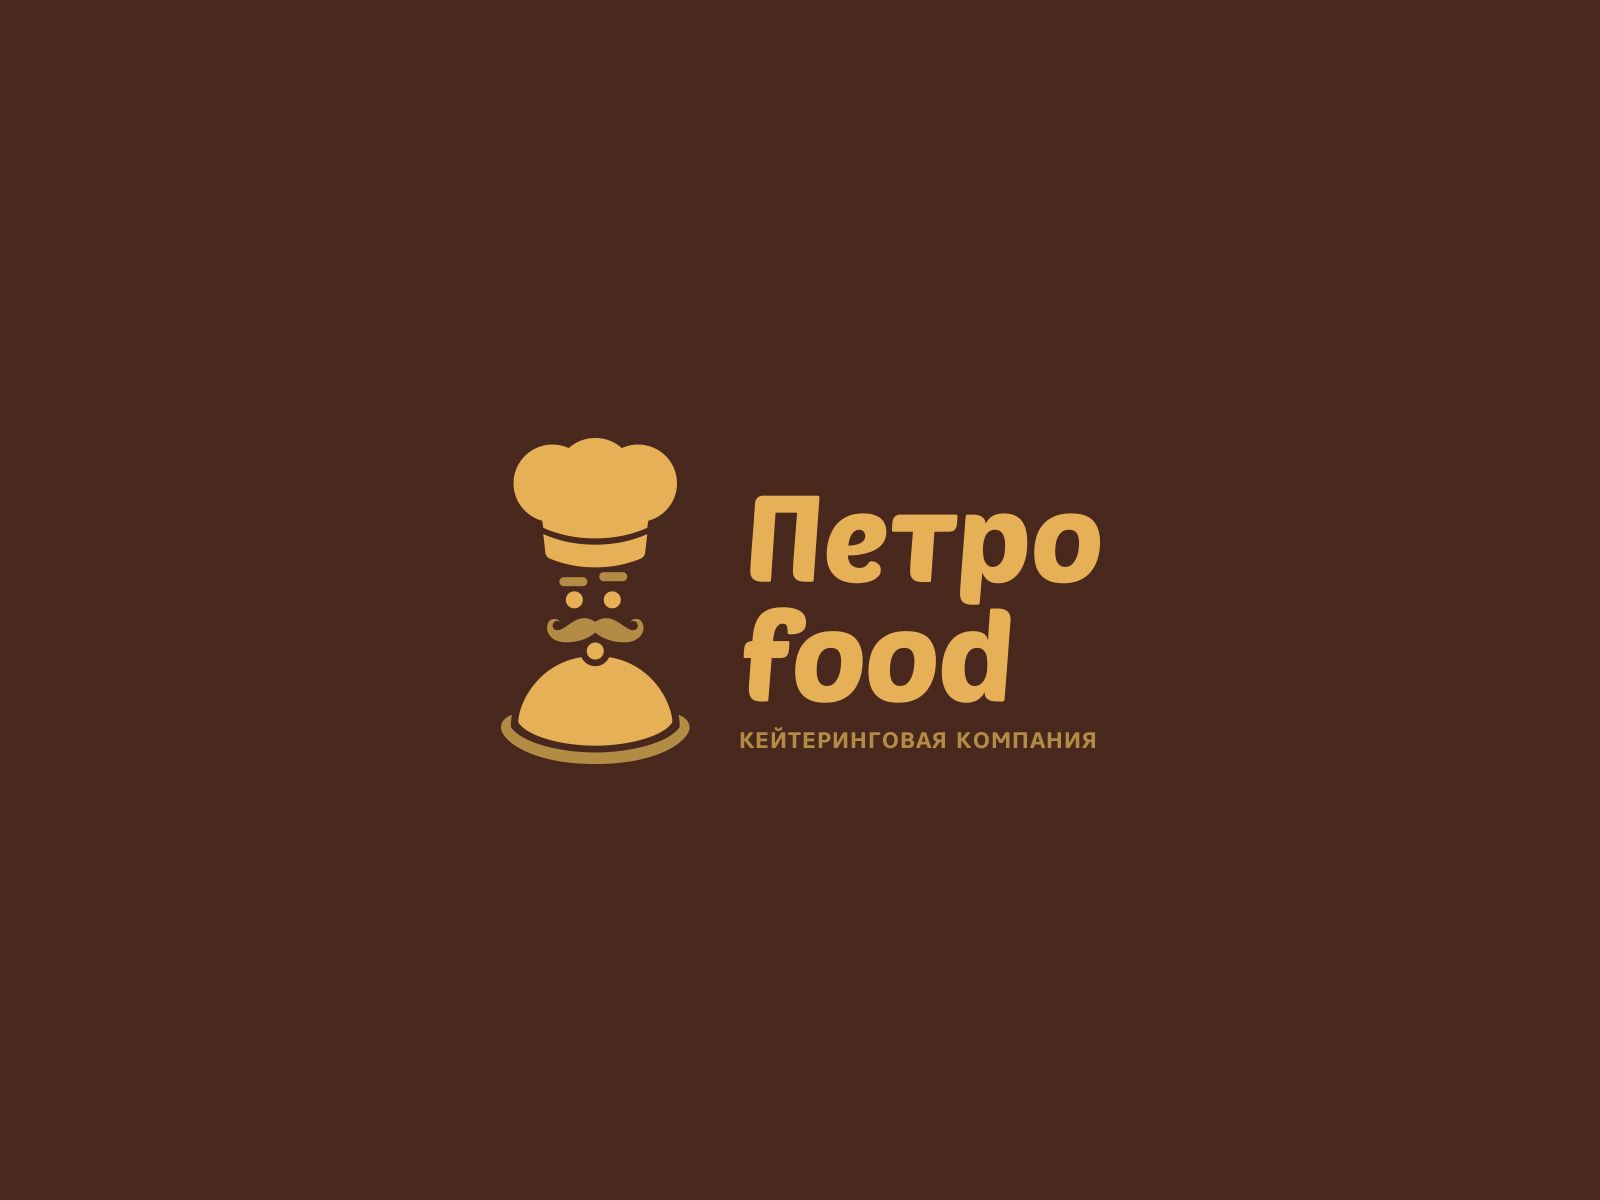 Логотип и фирменный стиль для Петро food  - дизайнер U4po4mak